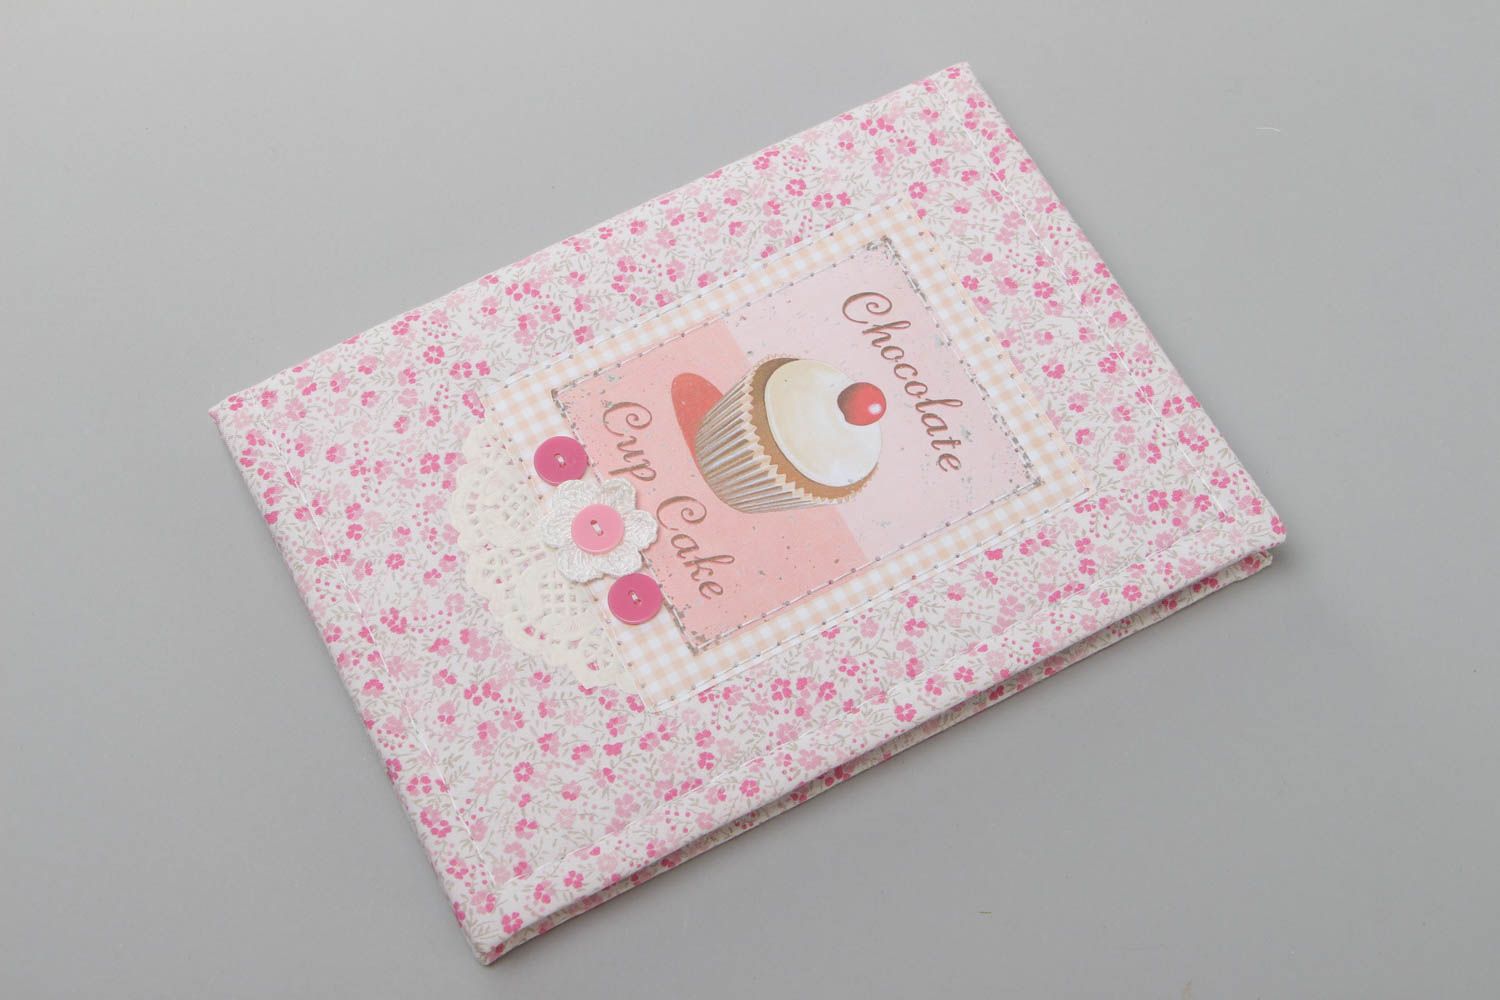 Блокнот ручной работы с тканевой обложкой из хлопка для девушки розовый хенд мэйд фото 2